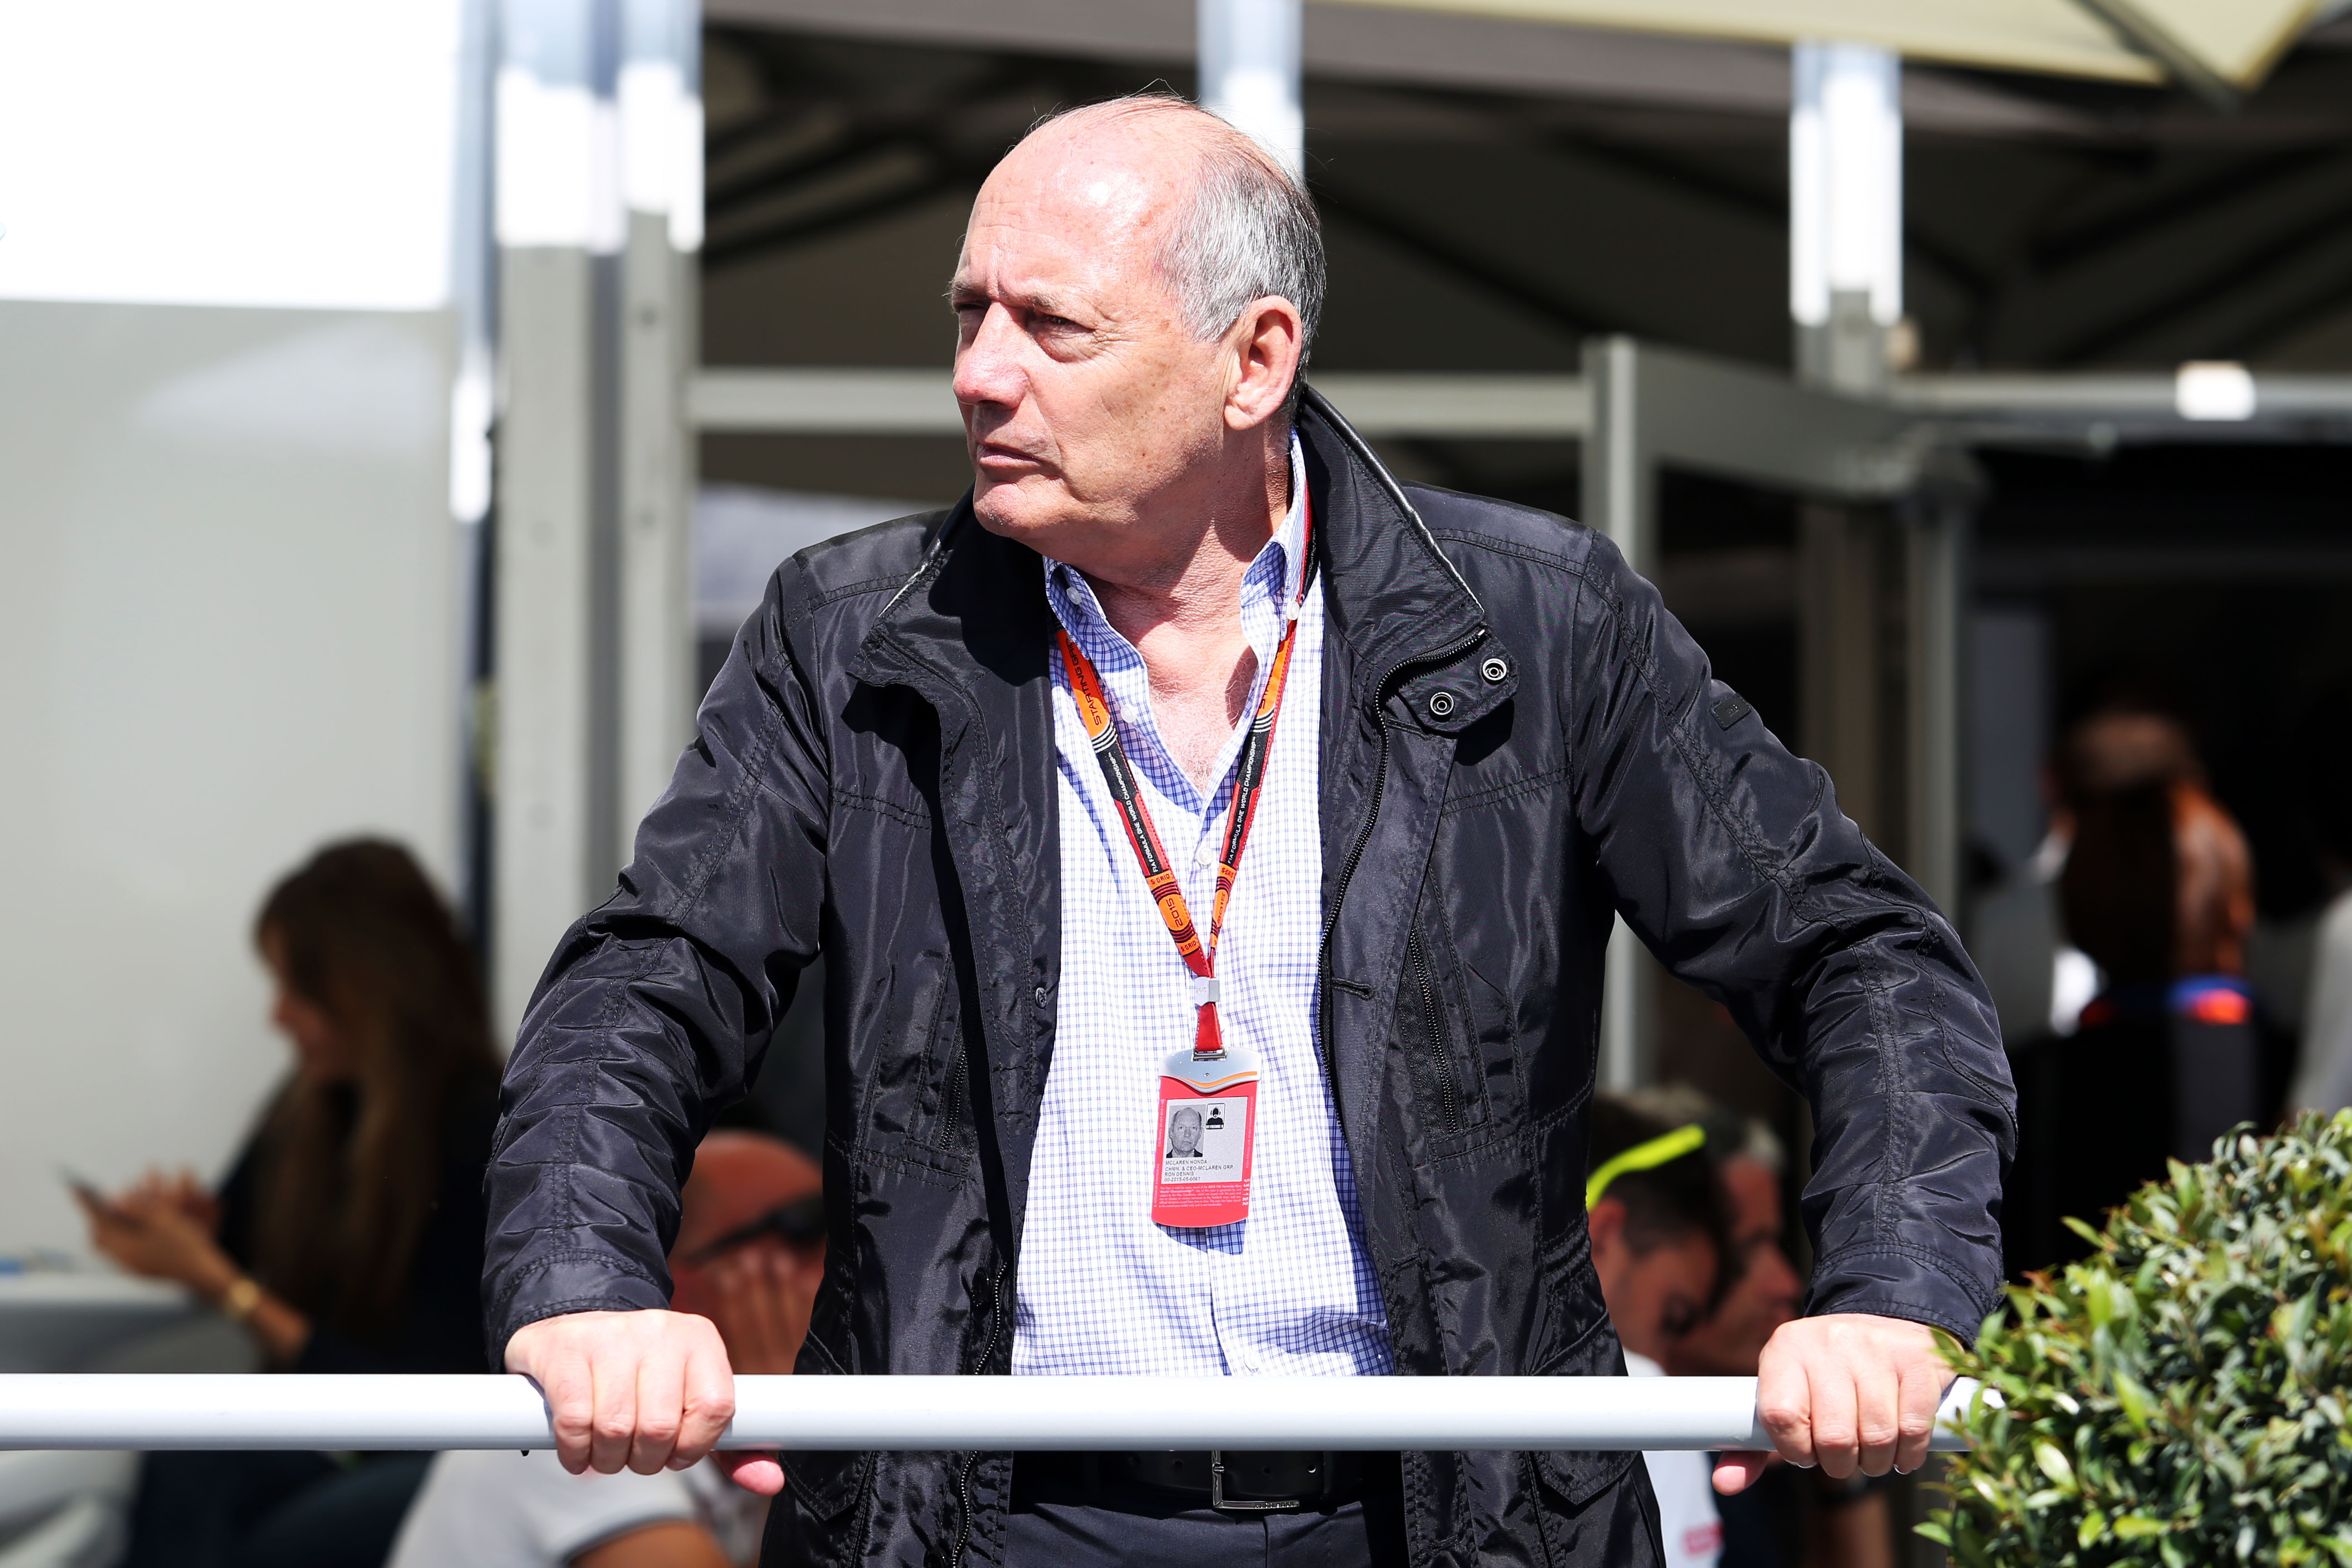 ‘Dennis heeft tot eind 2015 voor overname McLaren’